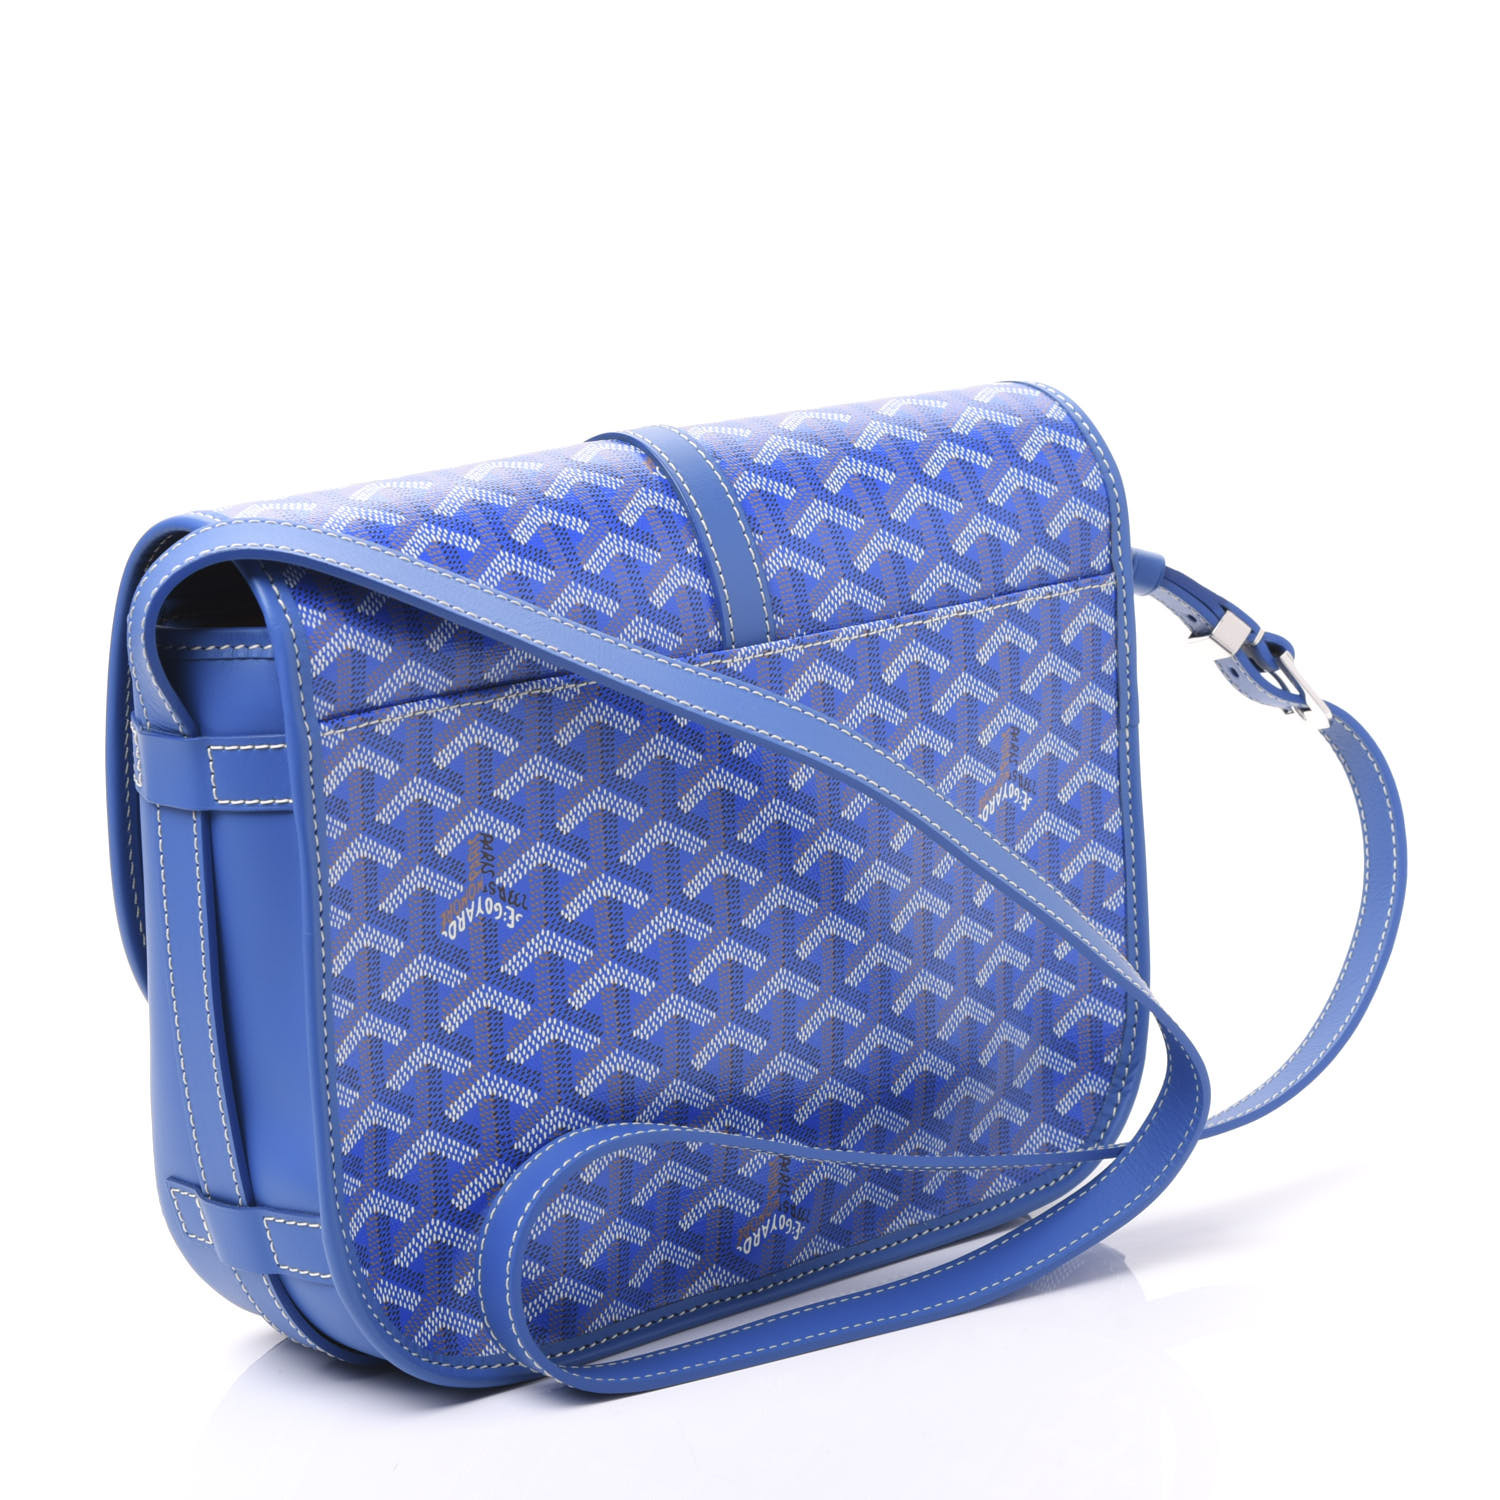 goyard messenger bag blue